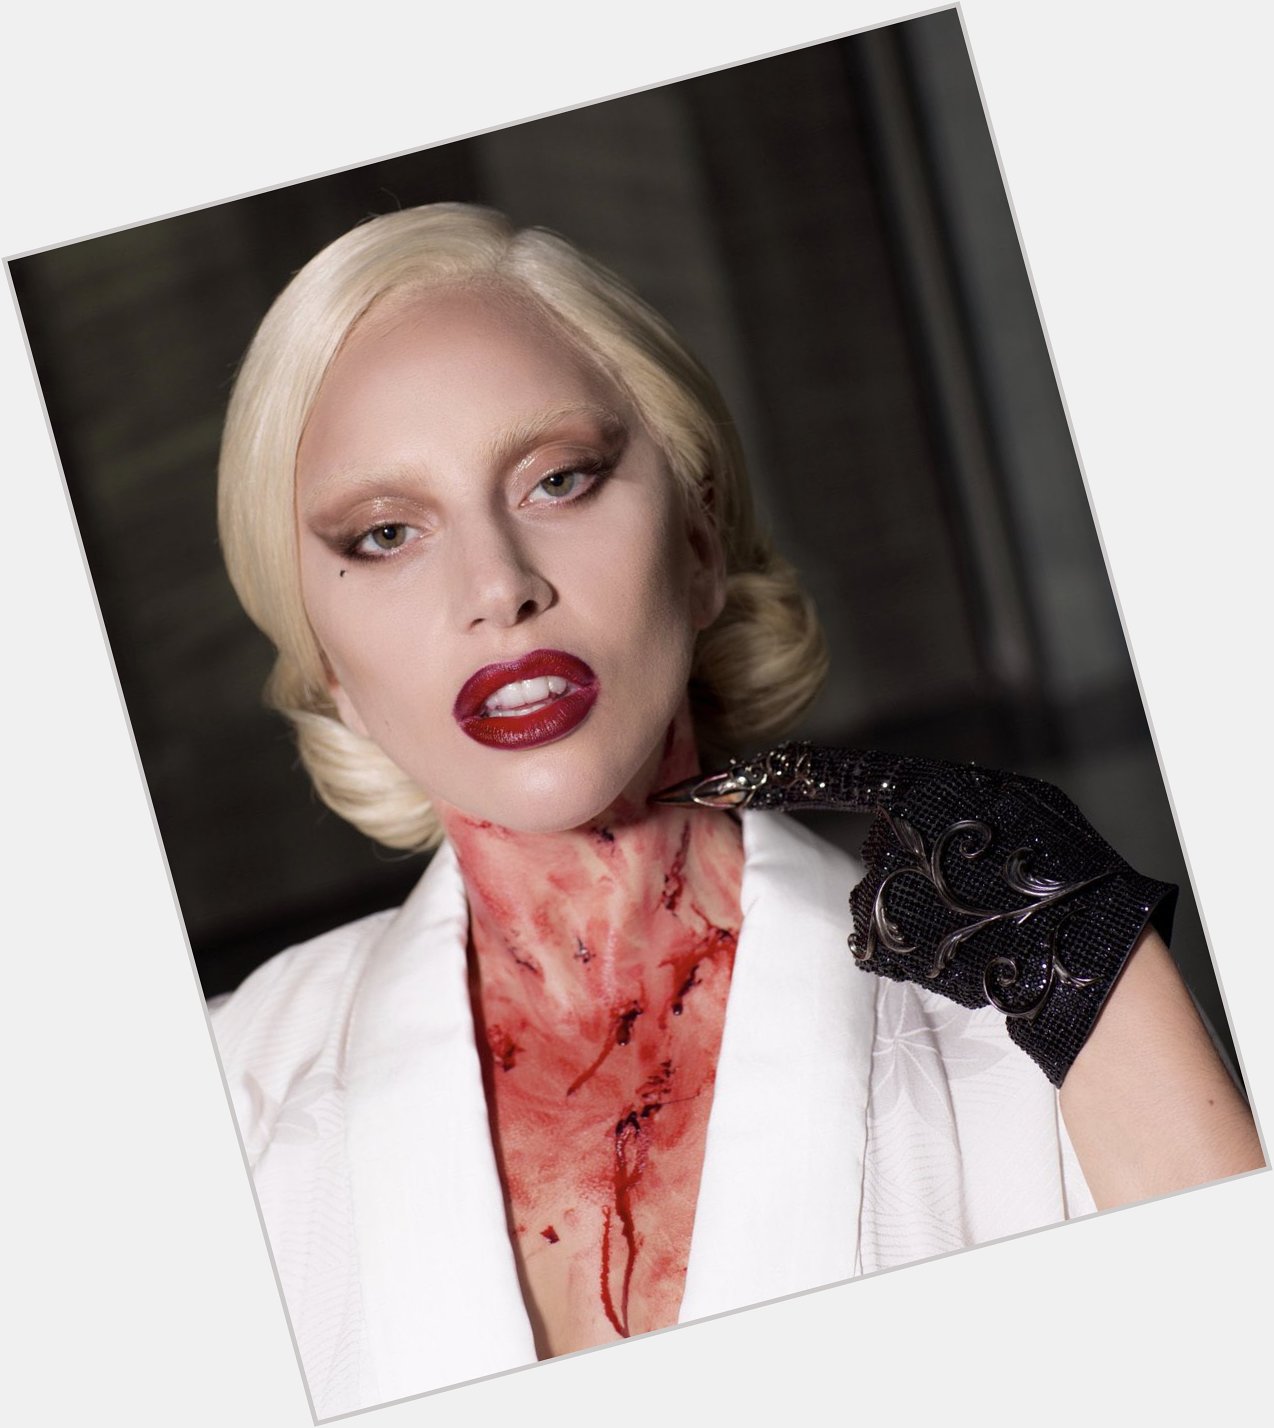 Happy 37th Birthday to Lady Gaga! 